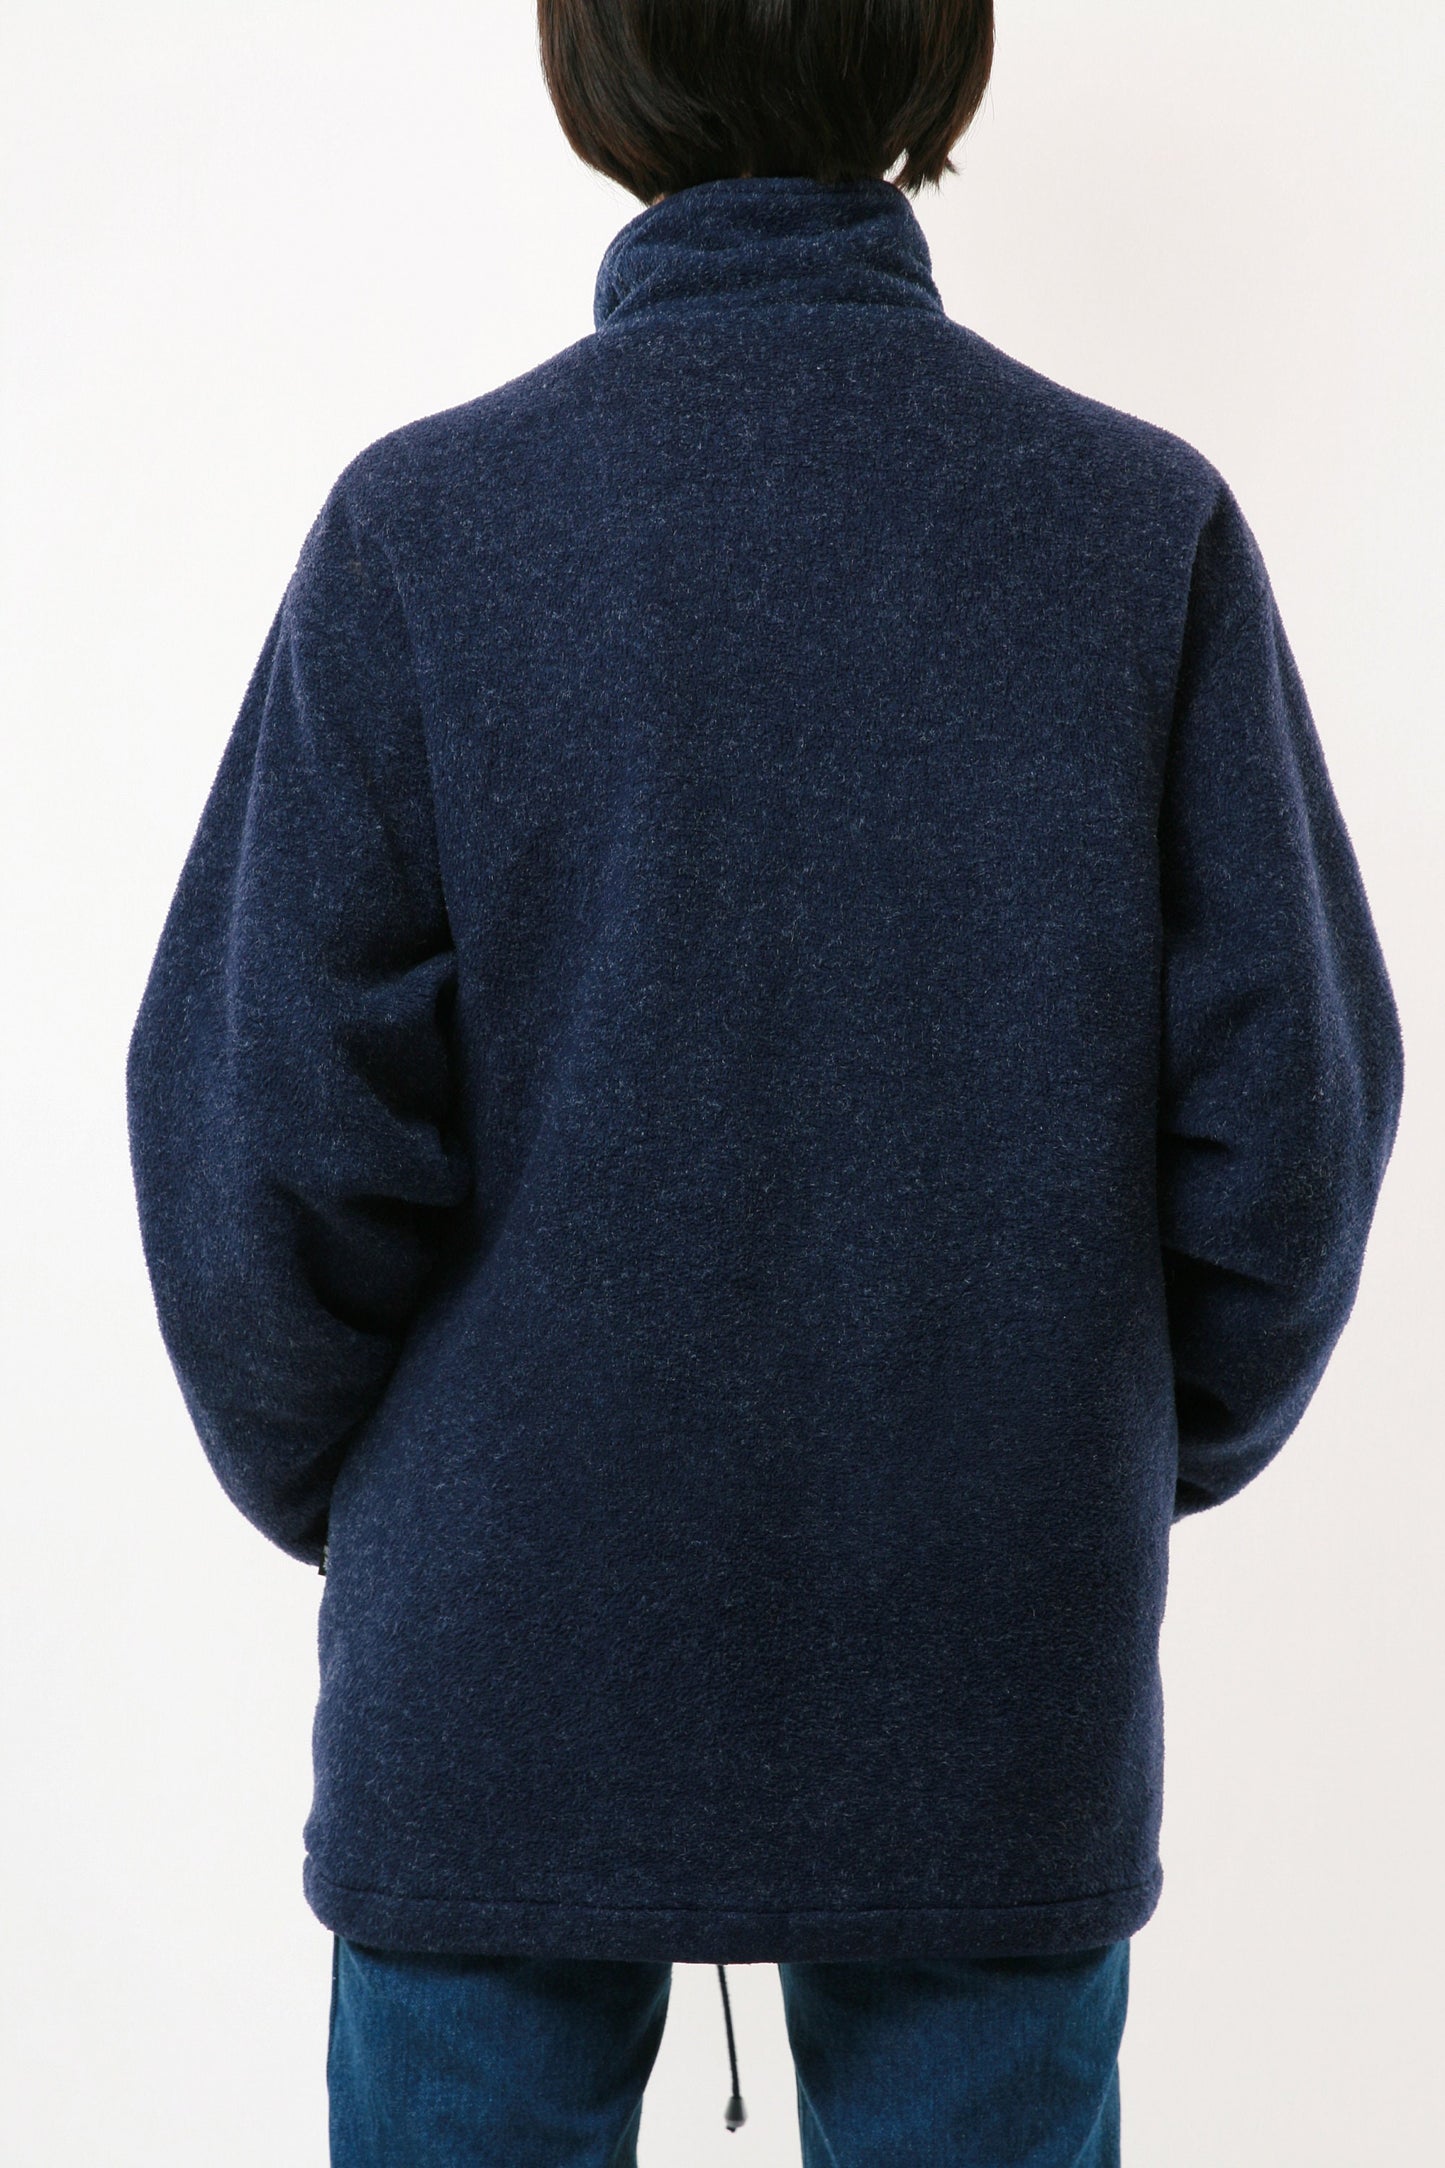 90s Vintage Fleece Full Zip Navy Blue Lined Topspirit 2207